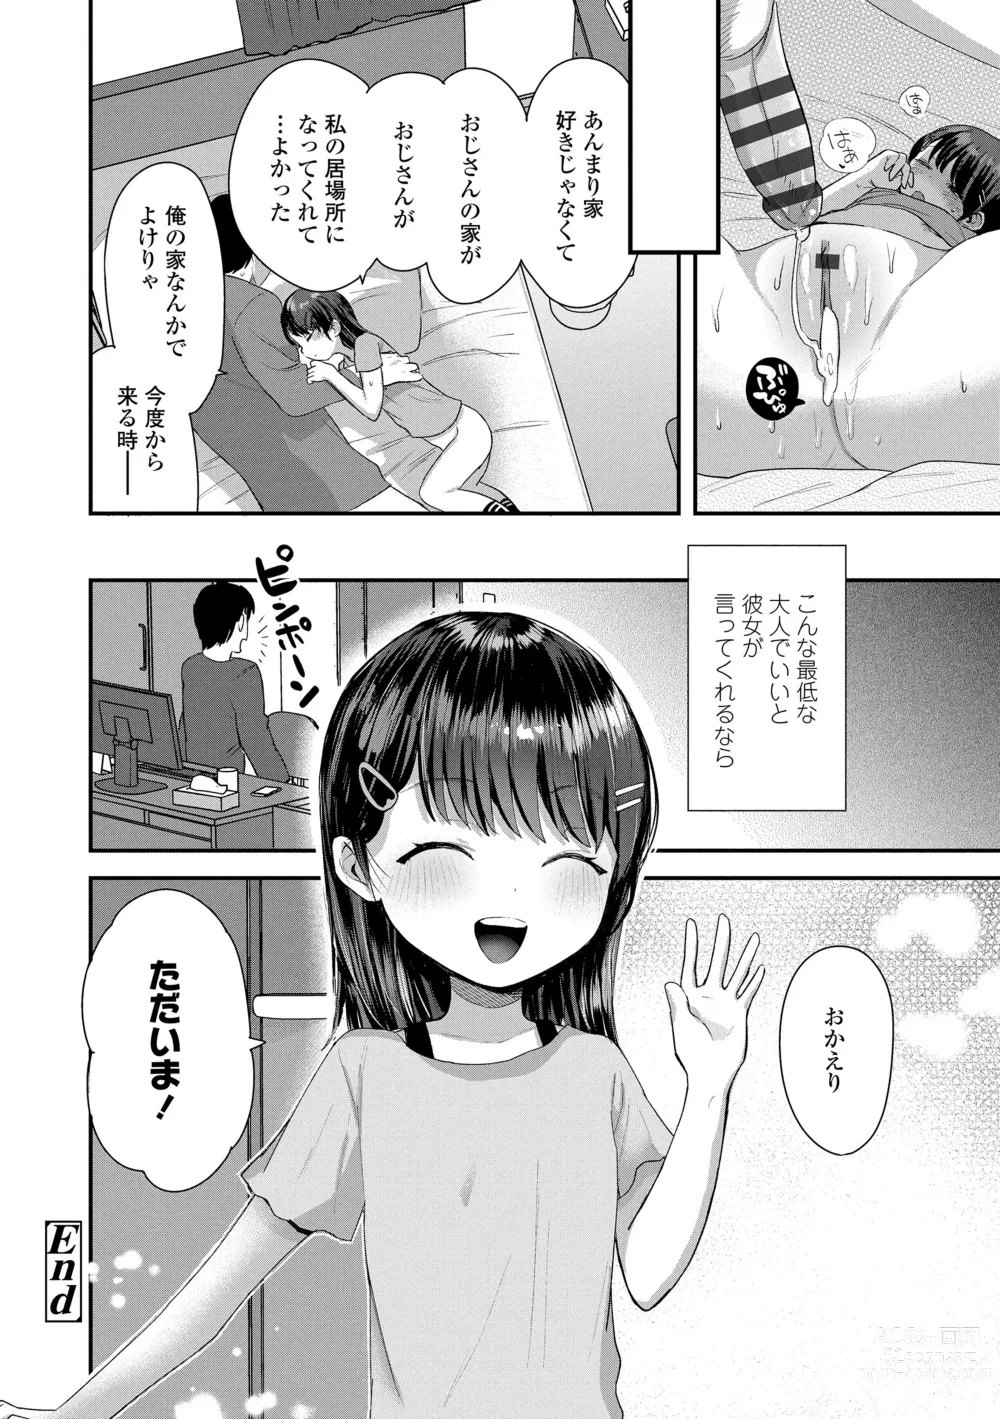 Page 174 of manga Chisanakonokoi